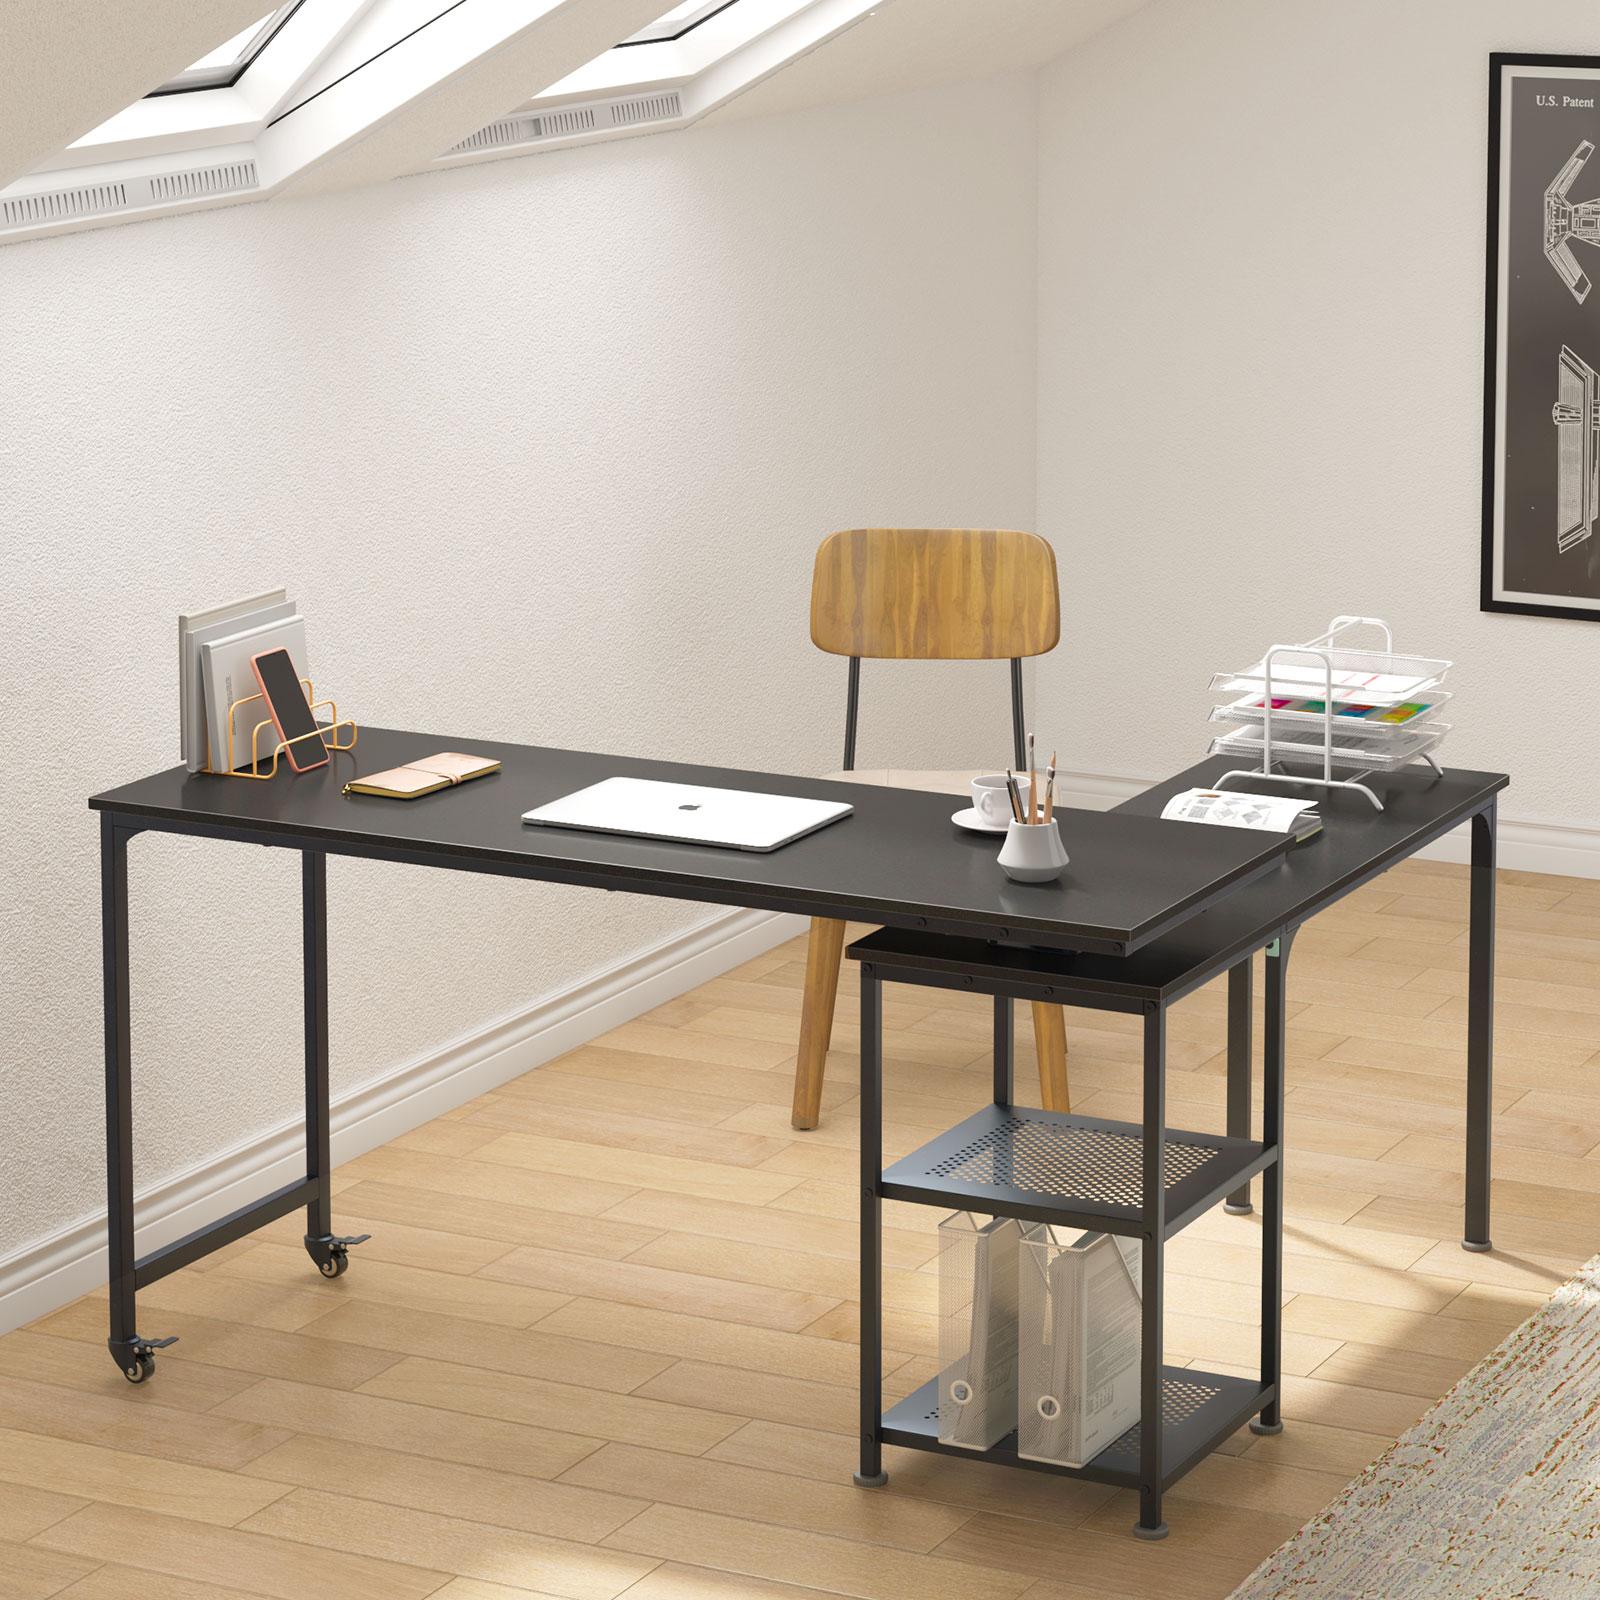 55 inch Reversible L Shaped Desk, 360° Free Rotating Corner Computer Desk with Storage Shelves,Black